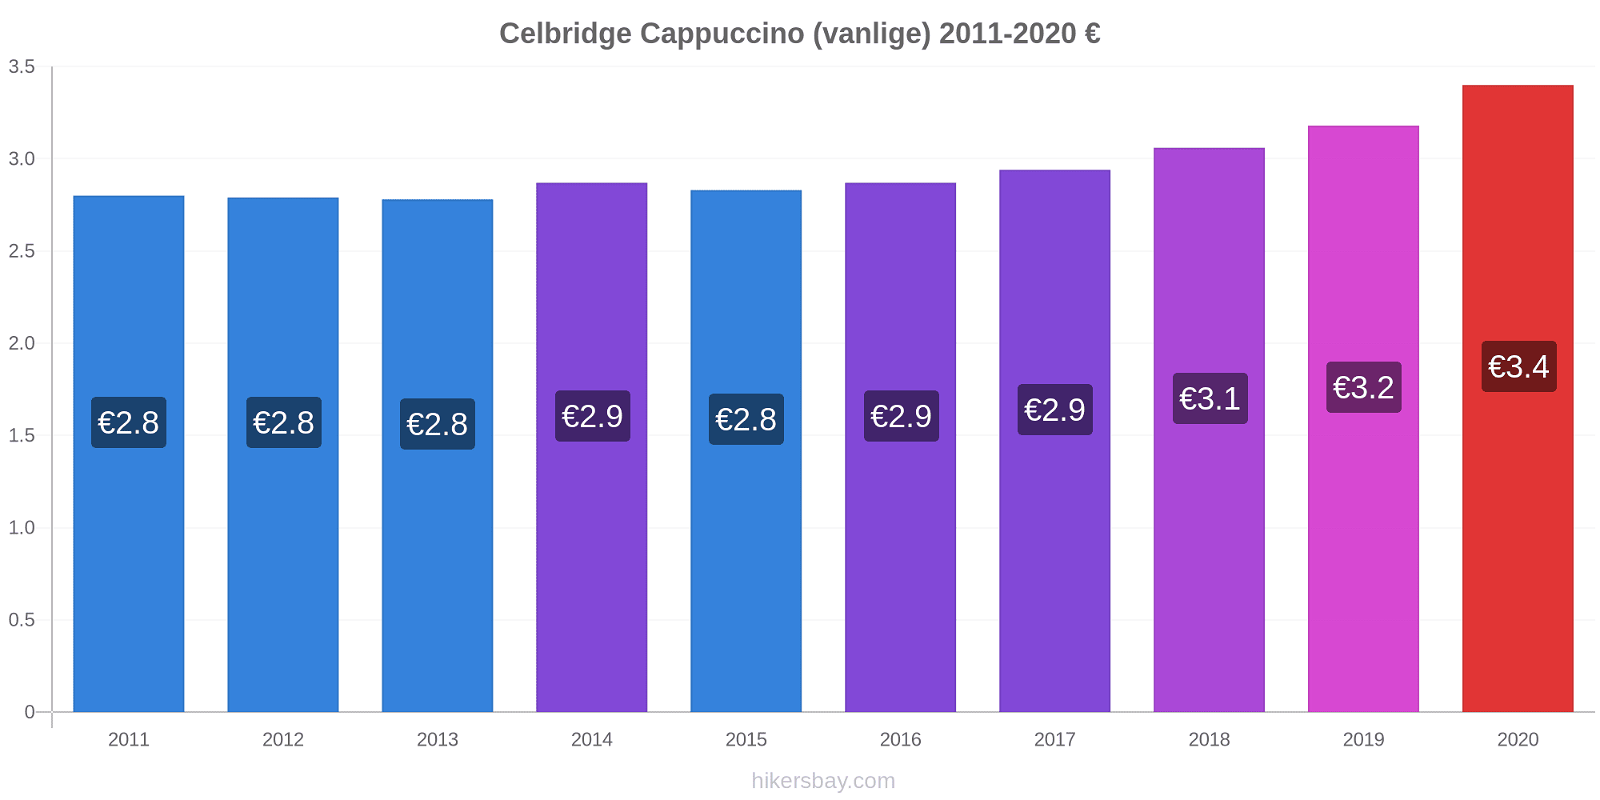 Celbridge prisendringer Cappuccino (vanlige) hikersbay.com